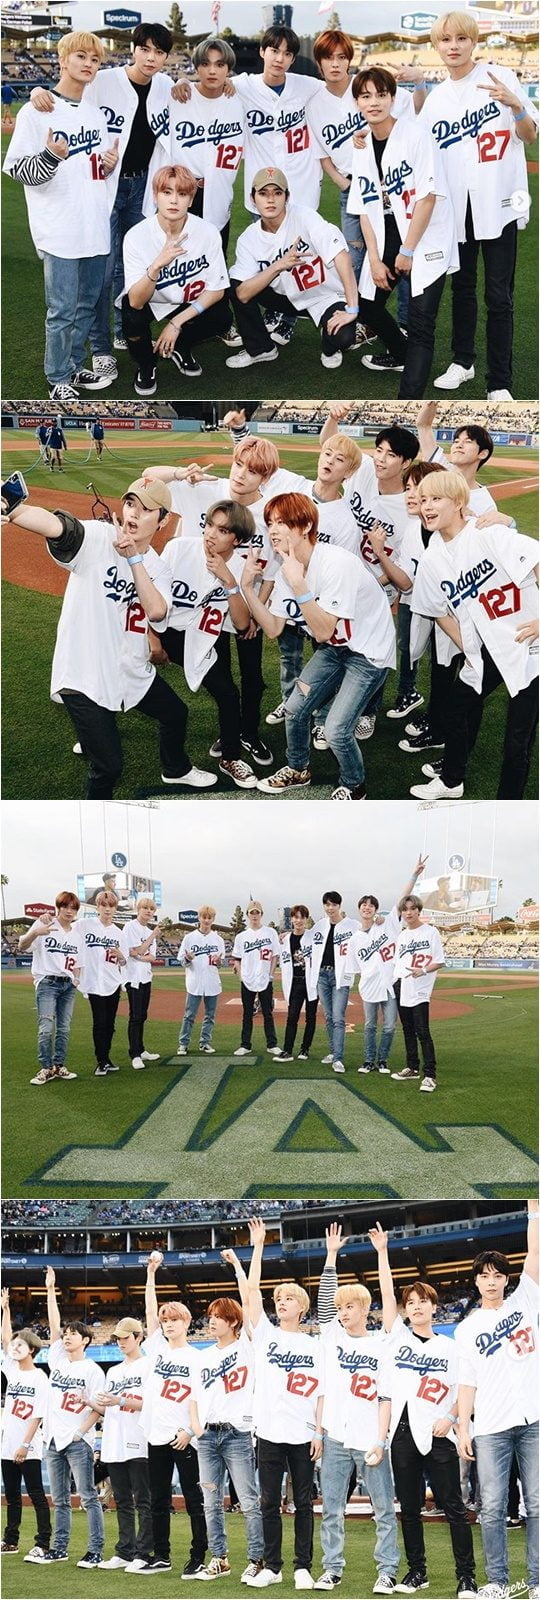 그룹 NCT 127./ 사진제공=LA Dodgers 공식 SNS